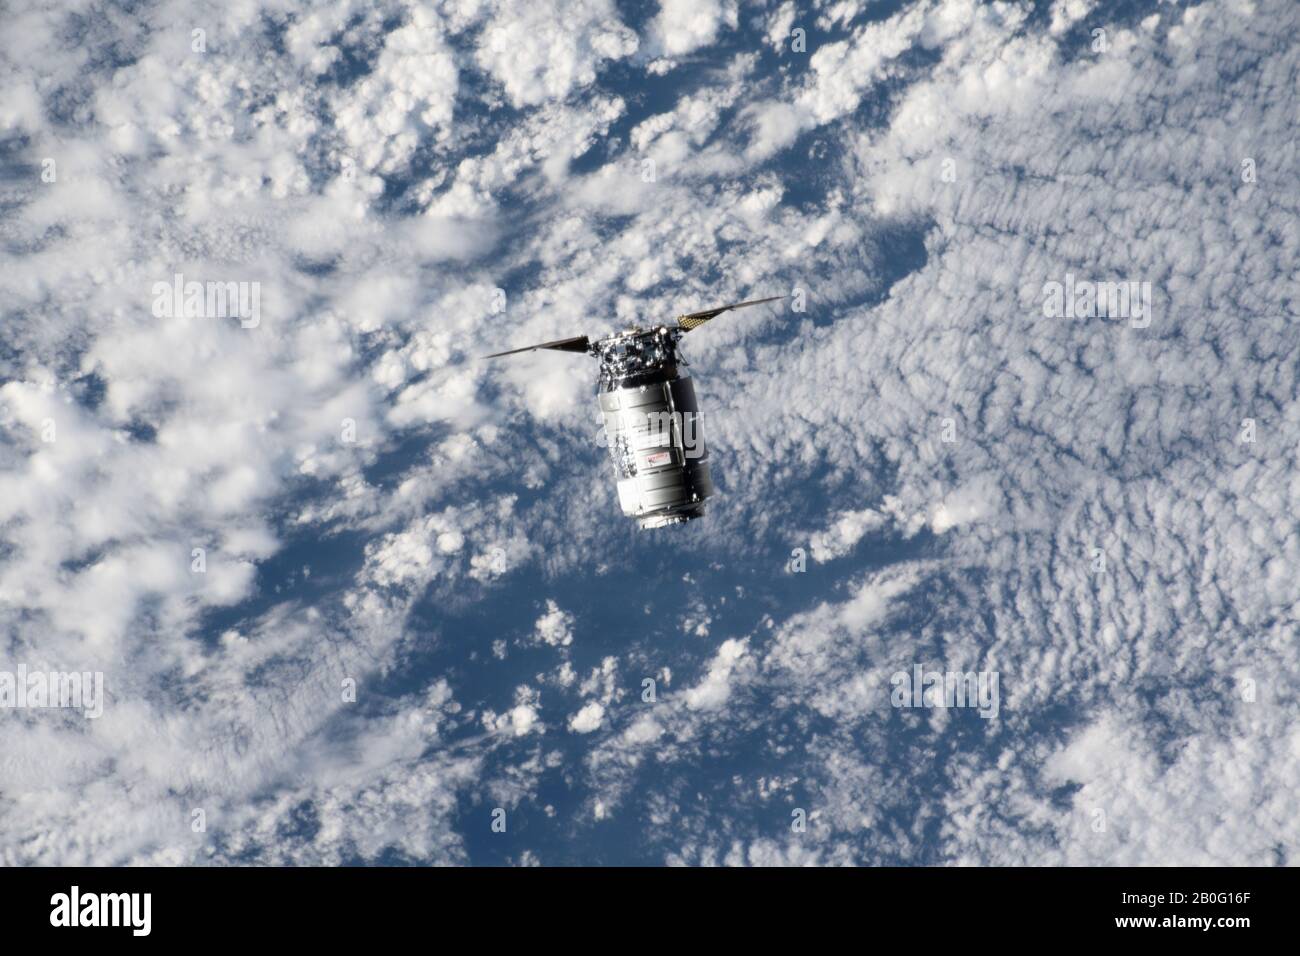 La navicella spaziale Northrop Grumman Cygnus con i distinti pannelli solari a forma di piatto si avvicina alla Stazione spaziale Internazionale per l'attracco il 18 febbraio 2020 in Earth Orbit. Il cargo non presidiato trasporta più di 7.500 libbre di rifornimenti per l'equipaggio del laboratorio orbitante. Foto Stock